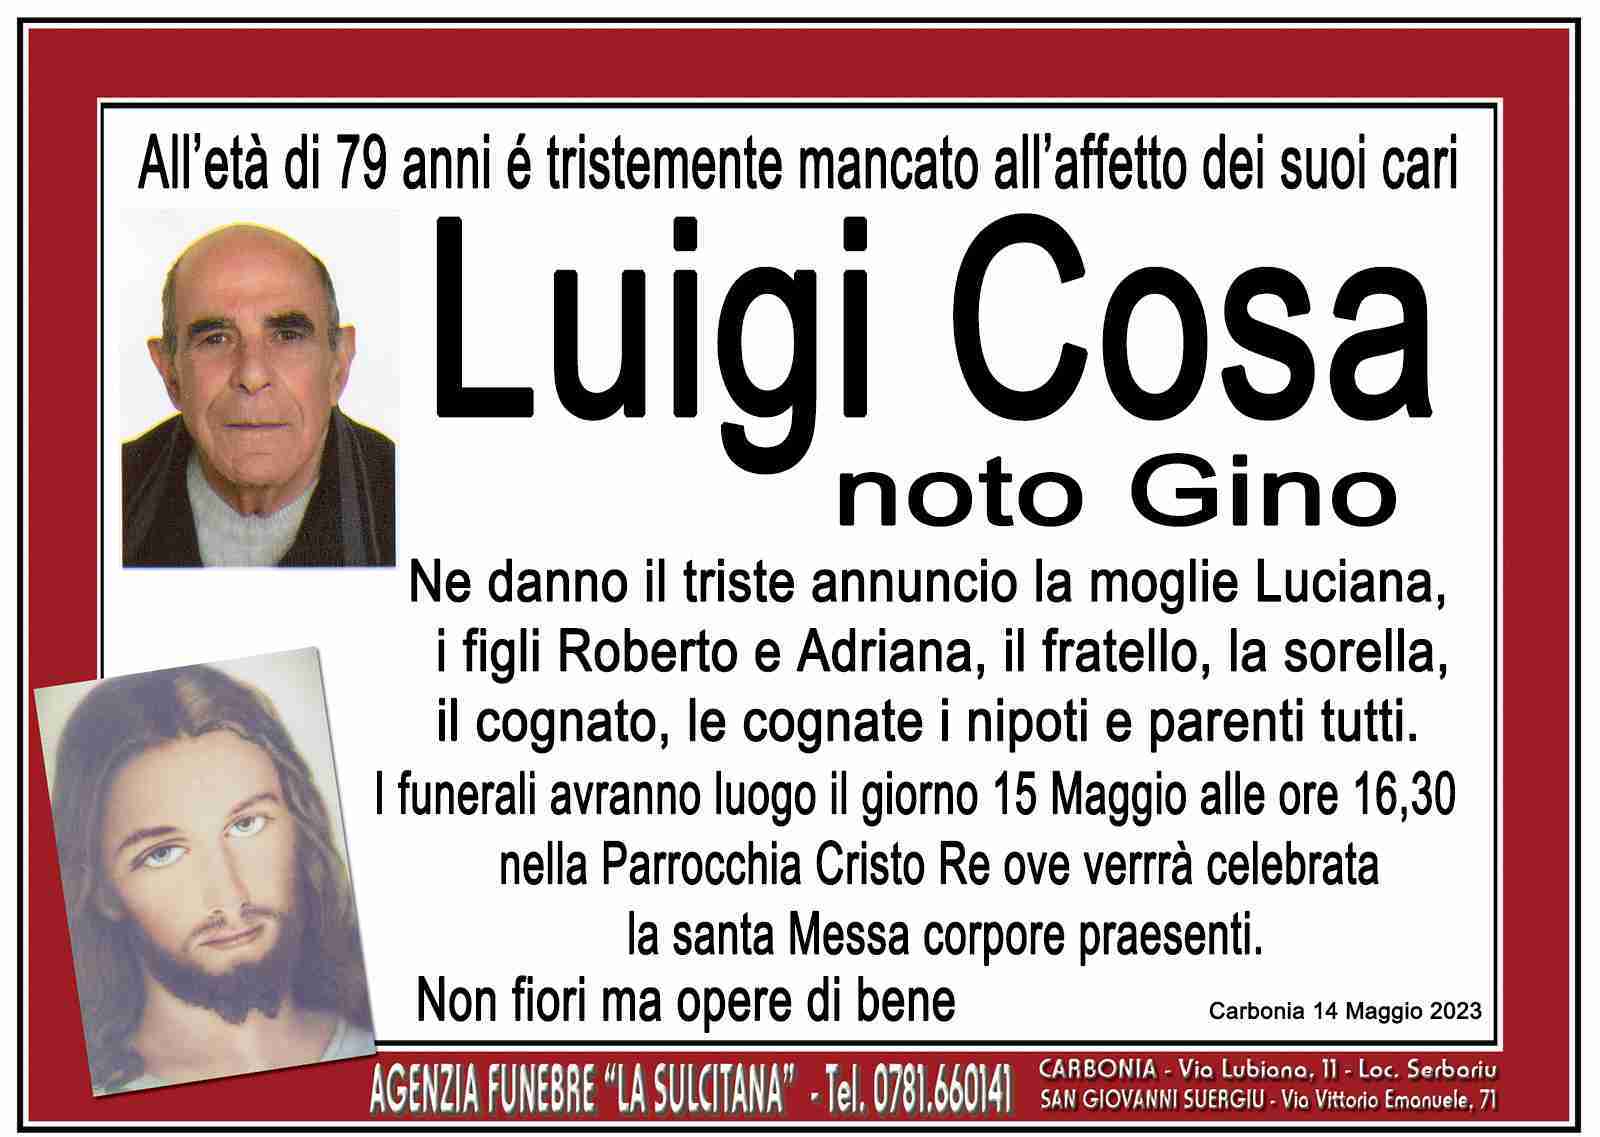 Luigi Cosa